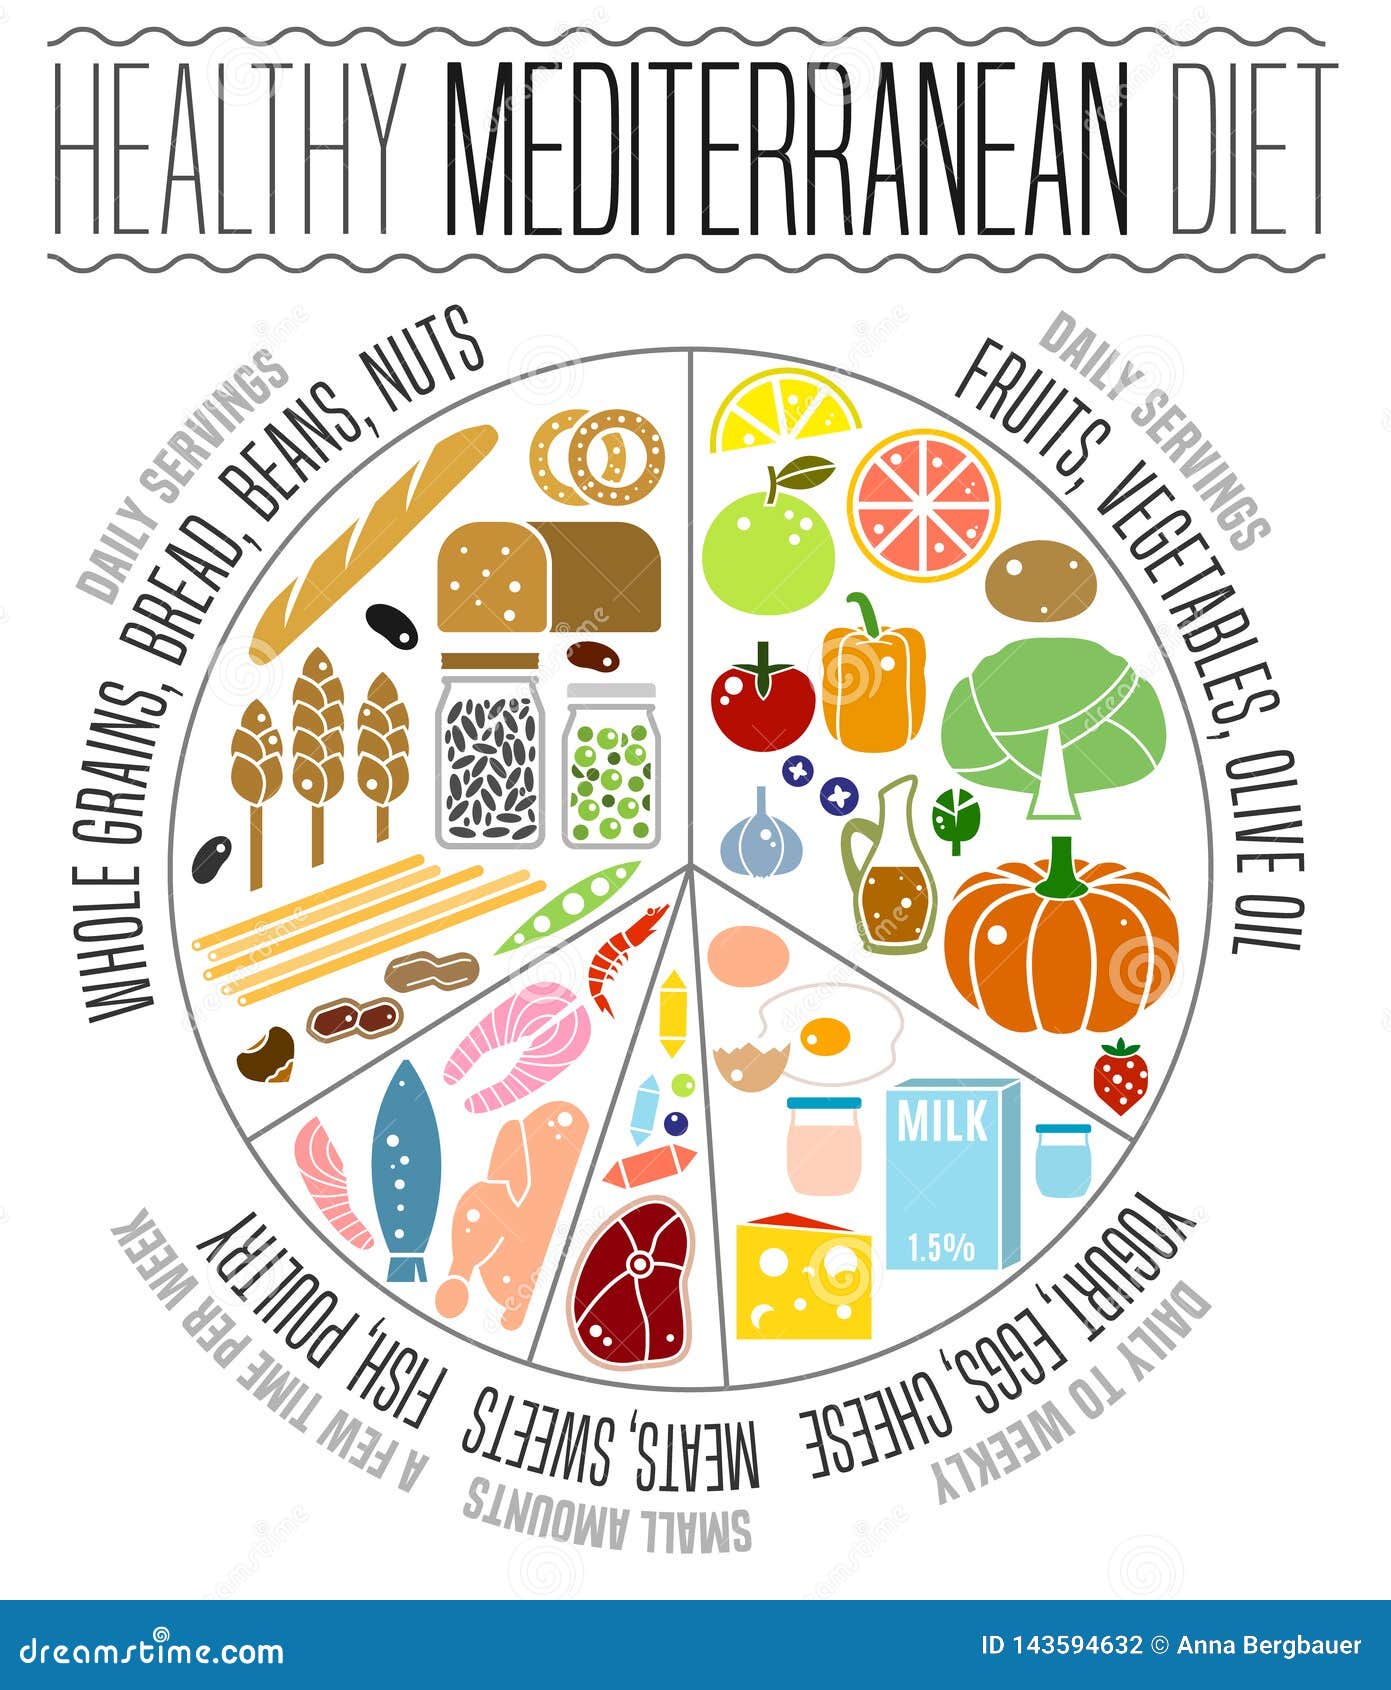 mediterranean diet image